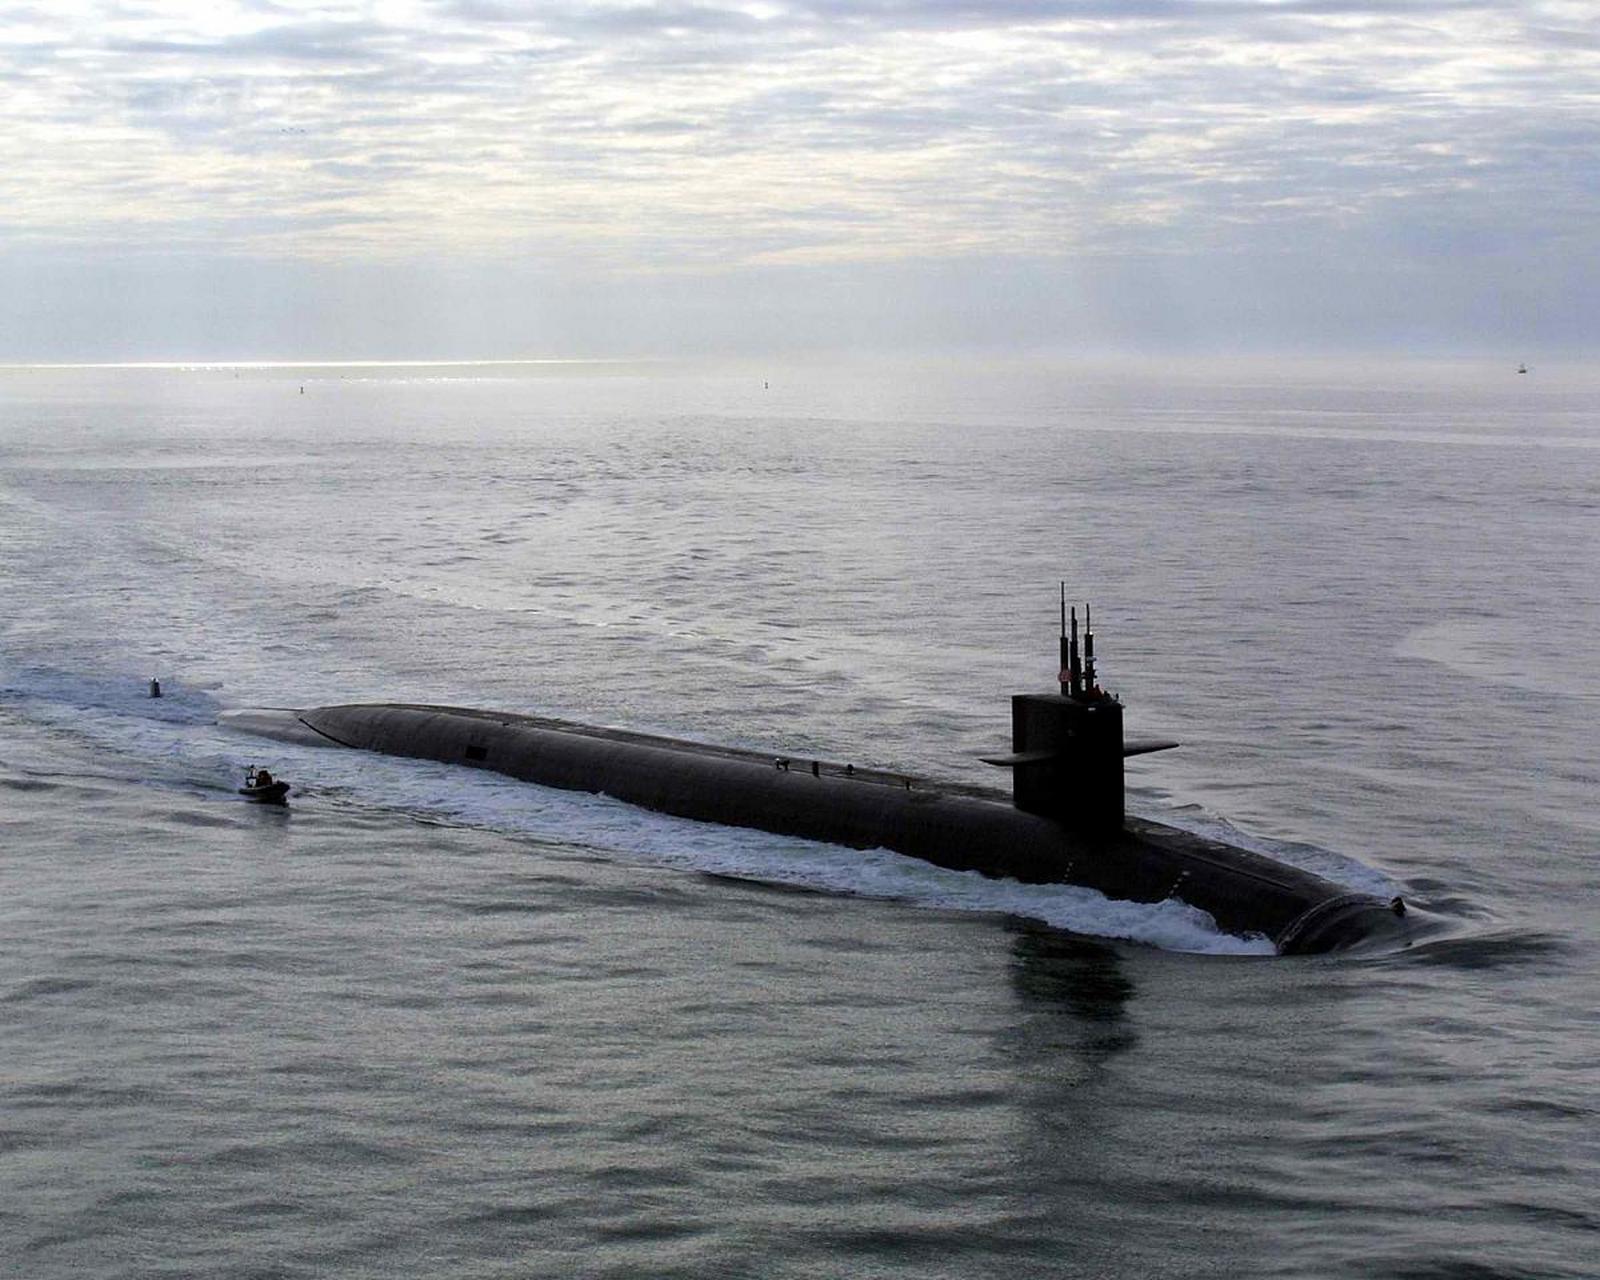 美国海军巡航导弹核潜艇 密歇根号停靠釜山  美国海军密歇根号